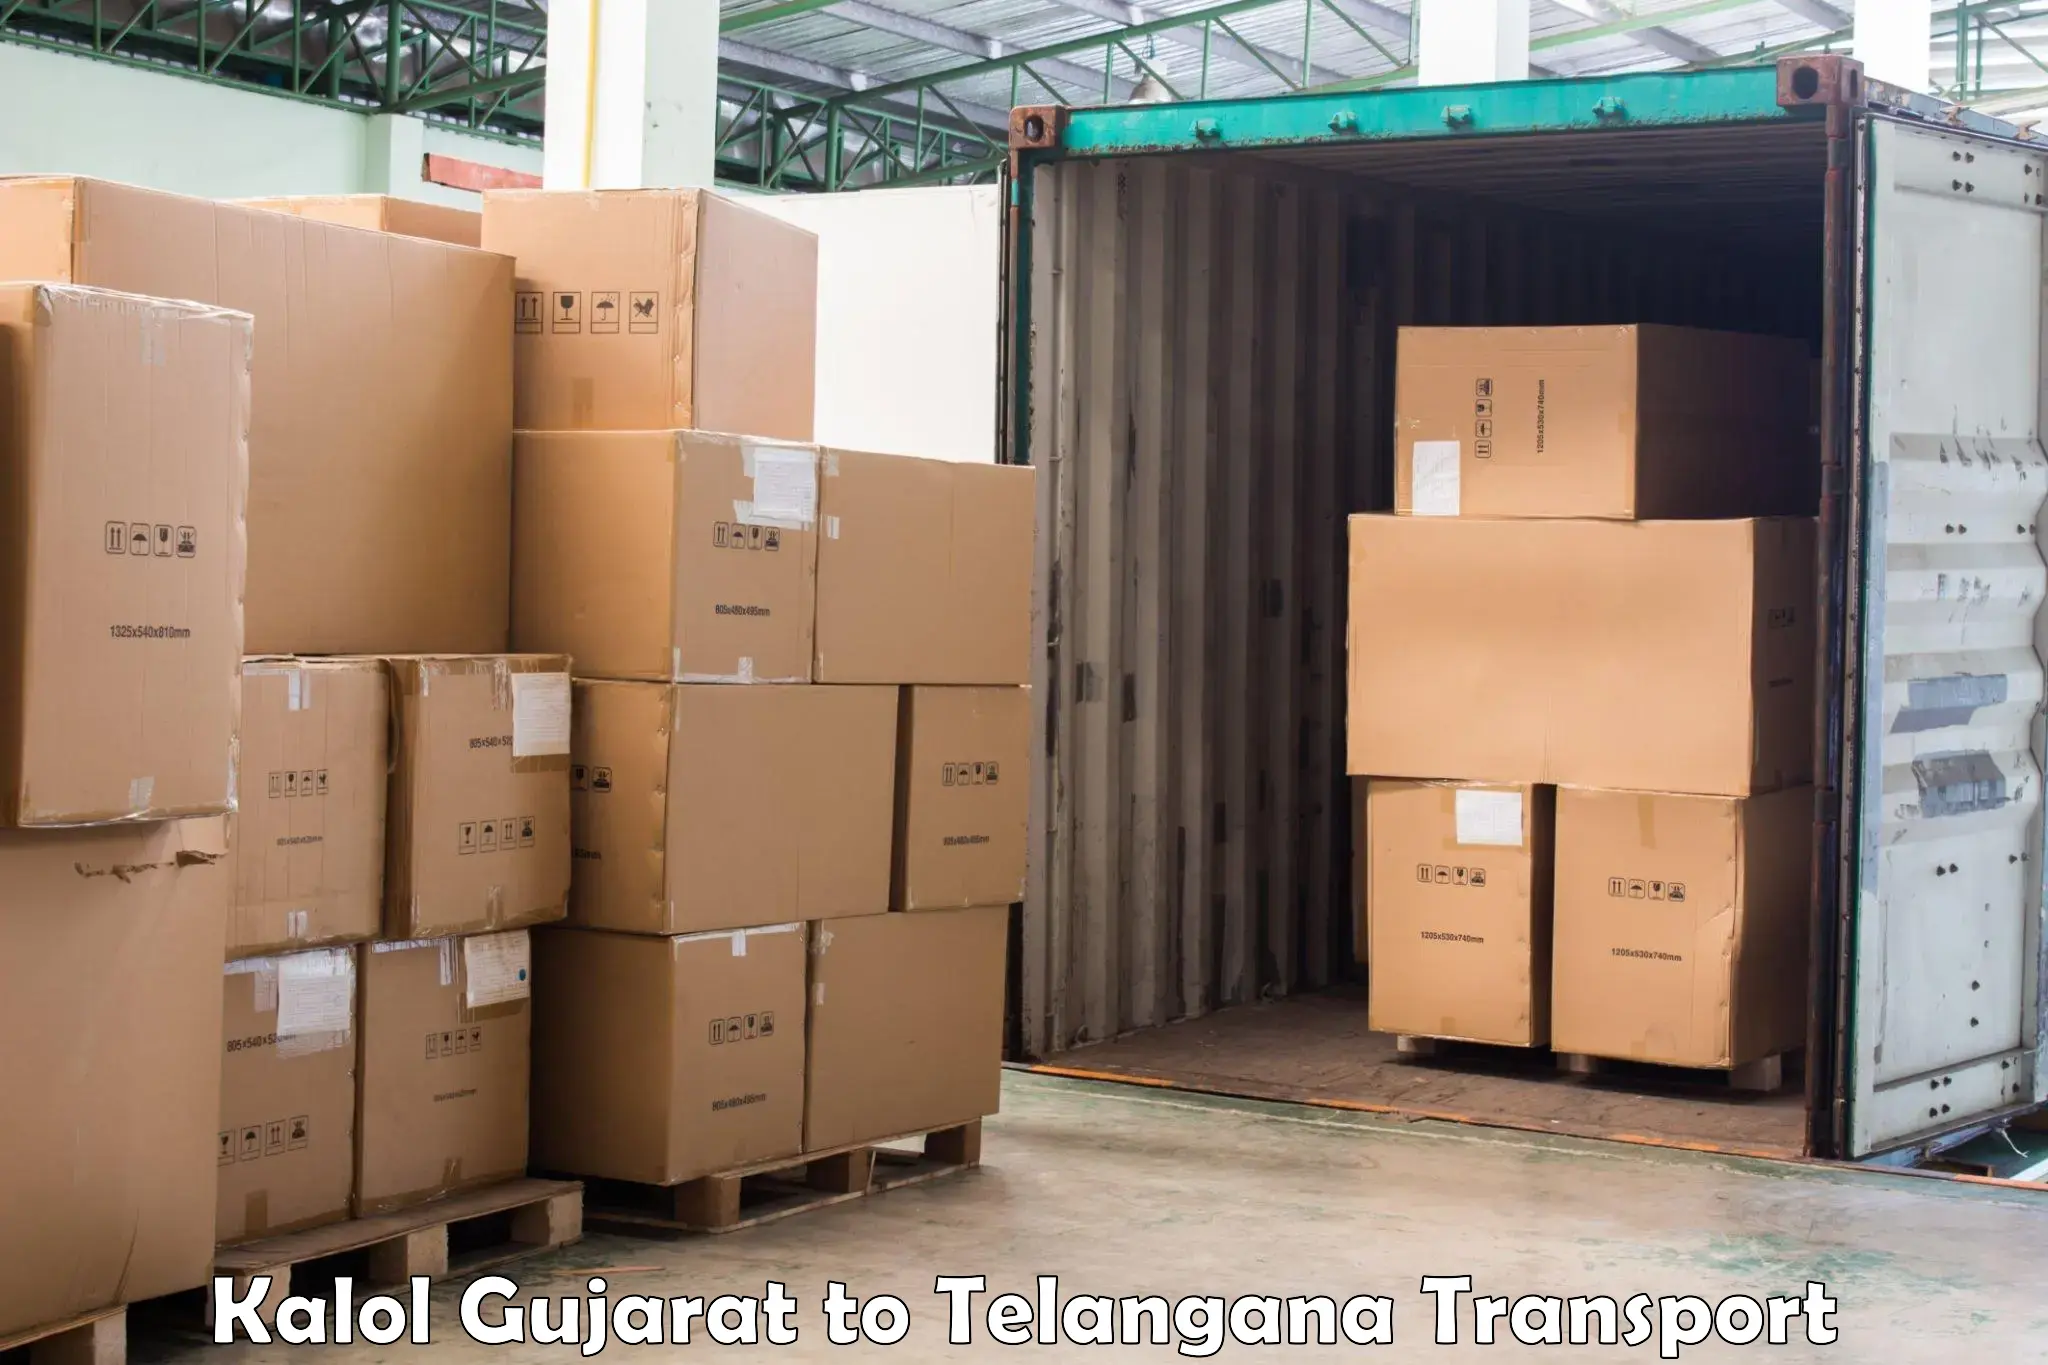 Parcel transport services Kalol Gujarat to Mahabub Nagar